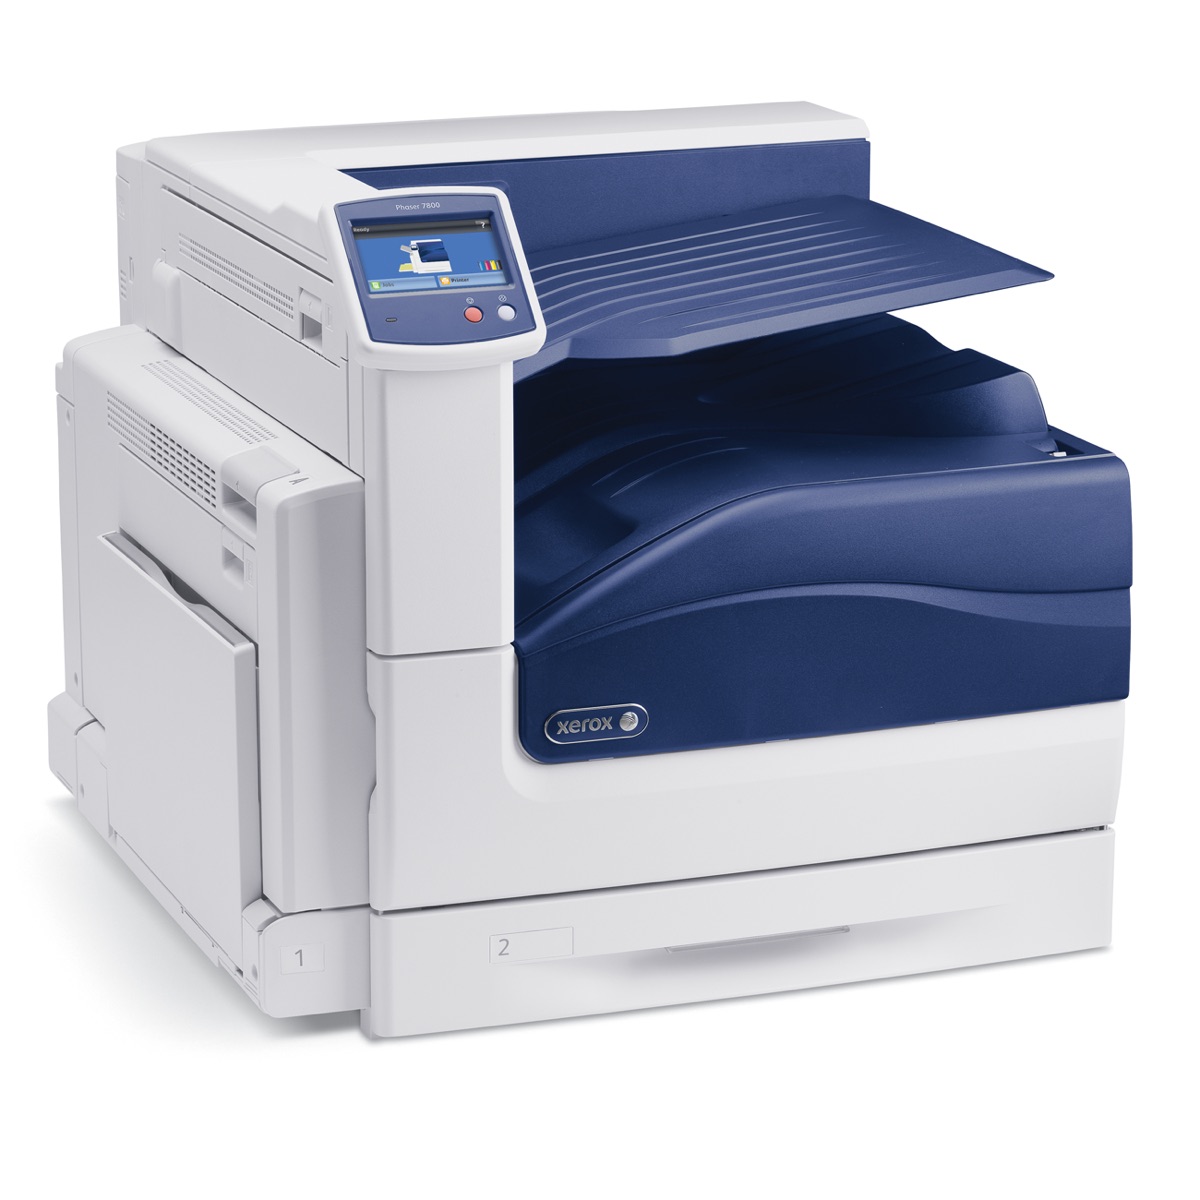 Xerox Printers:  The Xerox REFURBISHED Phaser 7800GX Printer